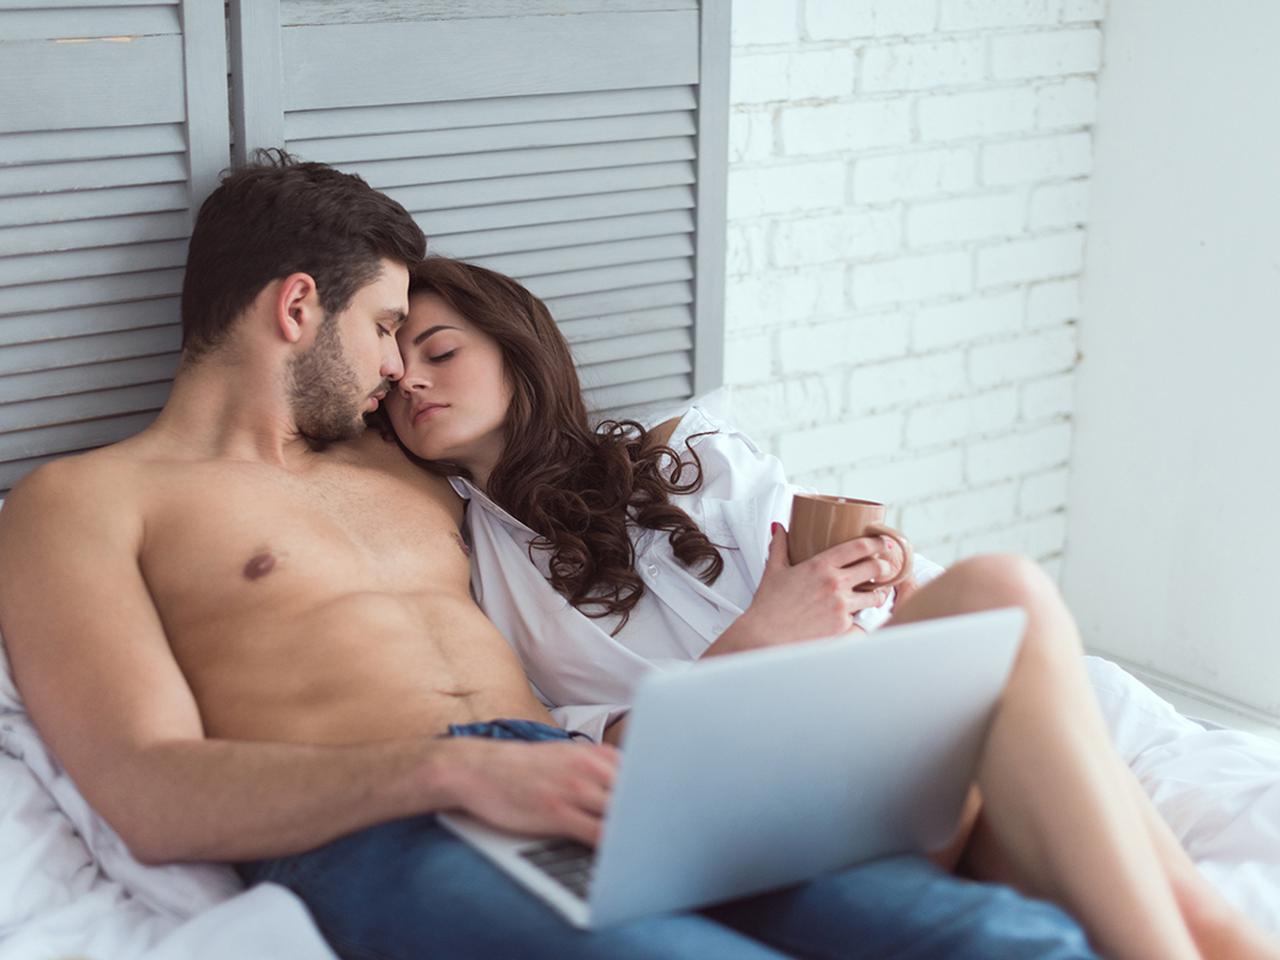 Правда ли, что просмотр порно убивает желание заниматься сексом